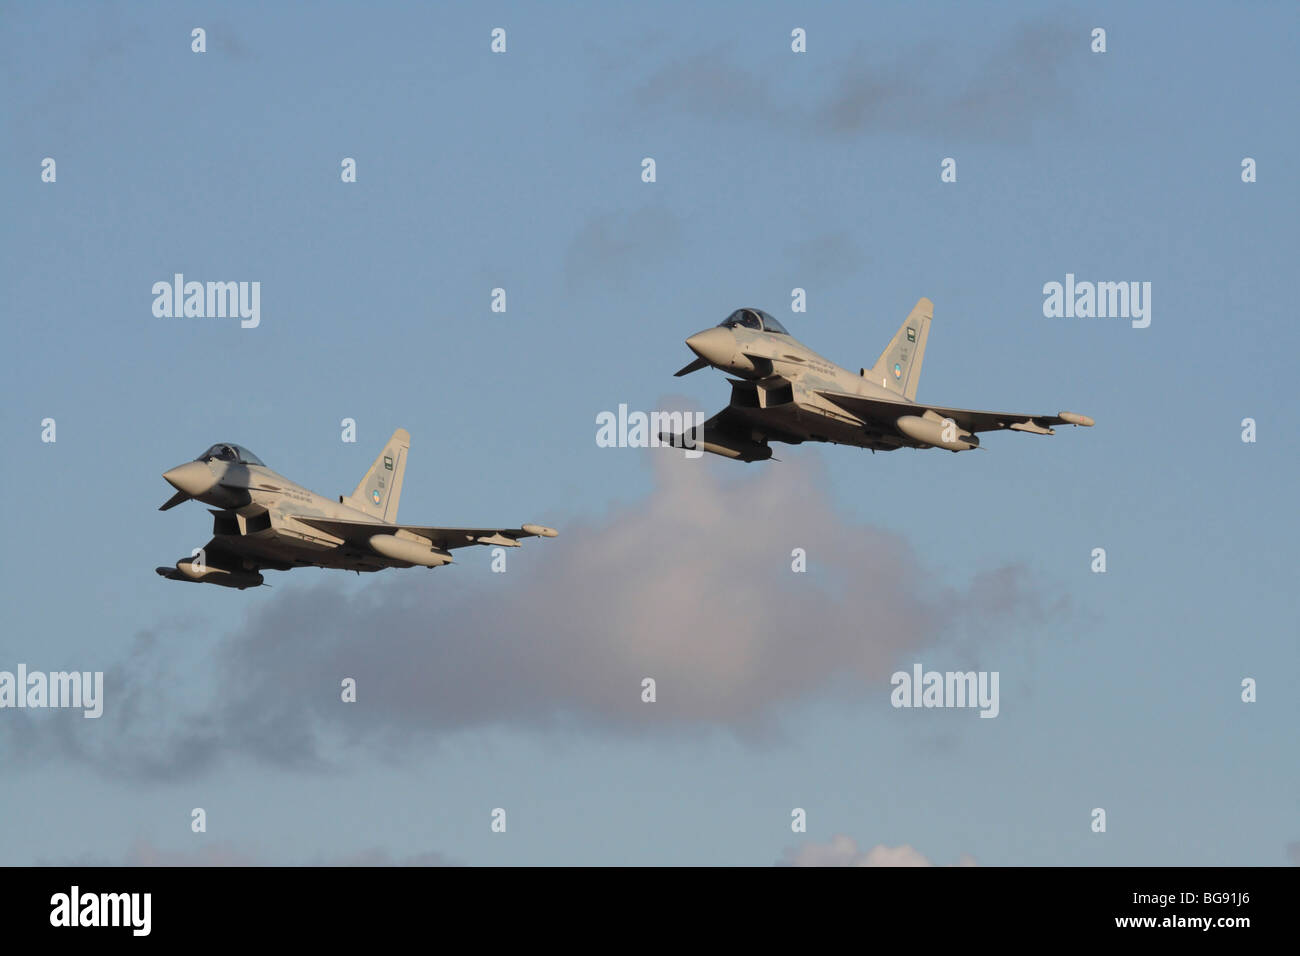 Moderne militärische Luftfahrt. Zwei Royal Saudi Air Force Eurofighter Typhoon Kampfjets fliegen in Formation in der Luft vor blauem Himmel Stockfoto